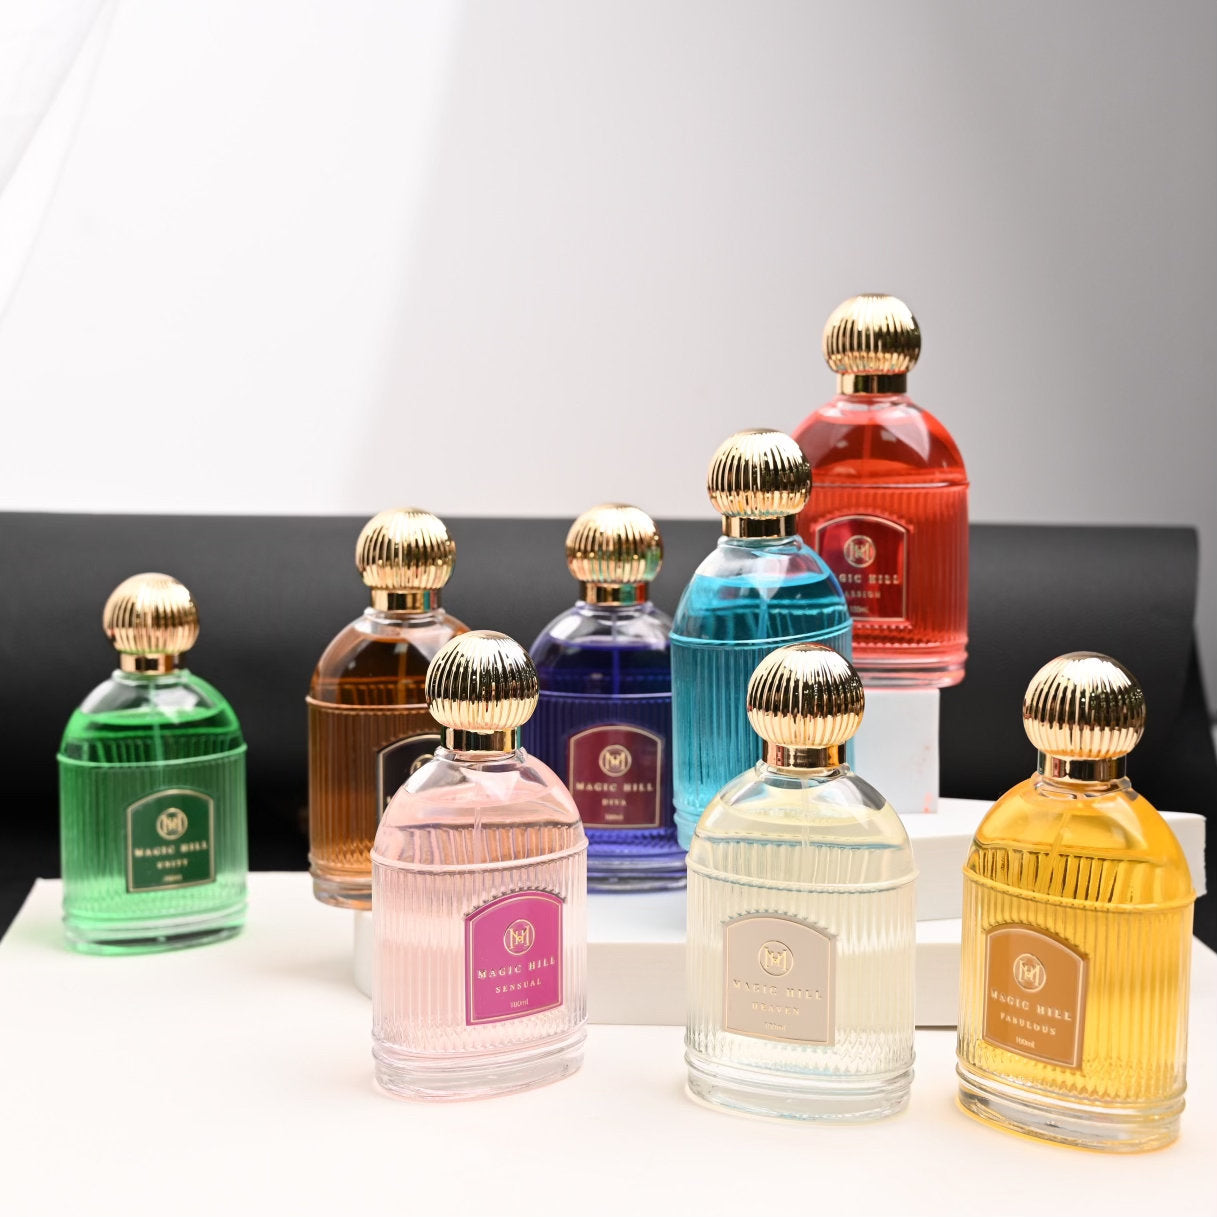 Diva Scent - Pre Order MAGIC HILL Exclusive Perfume